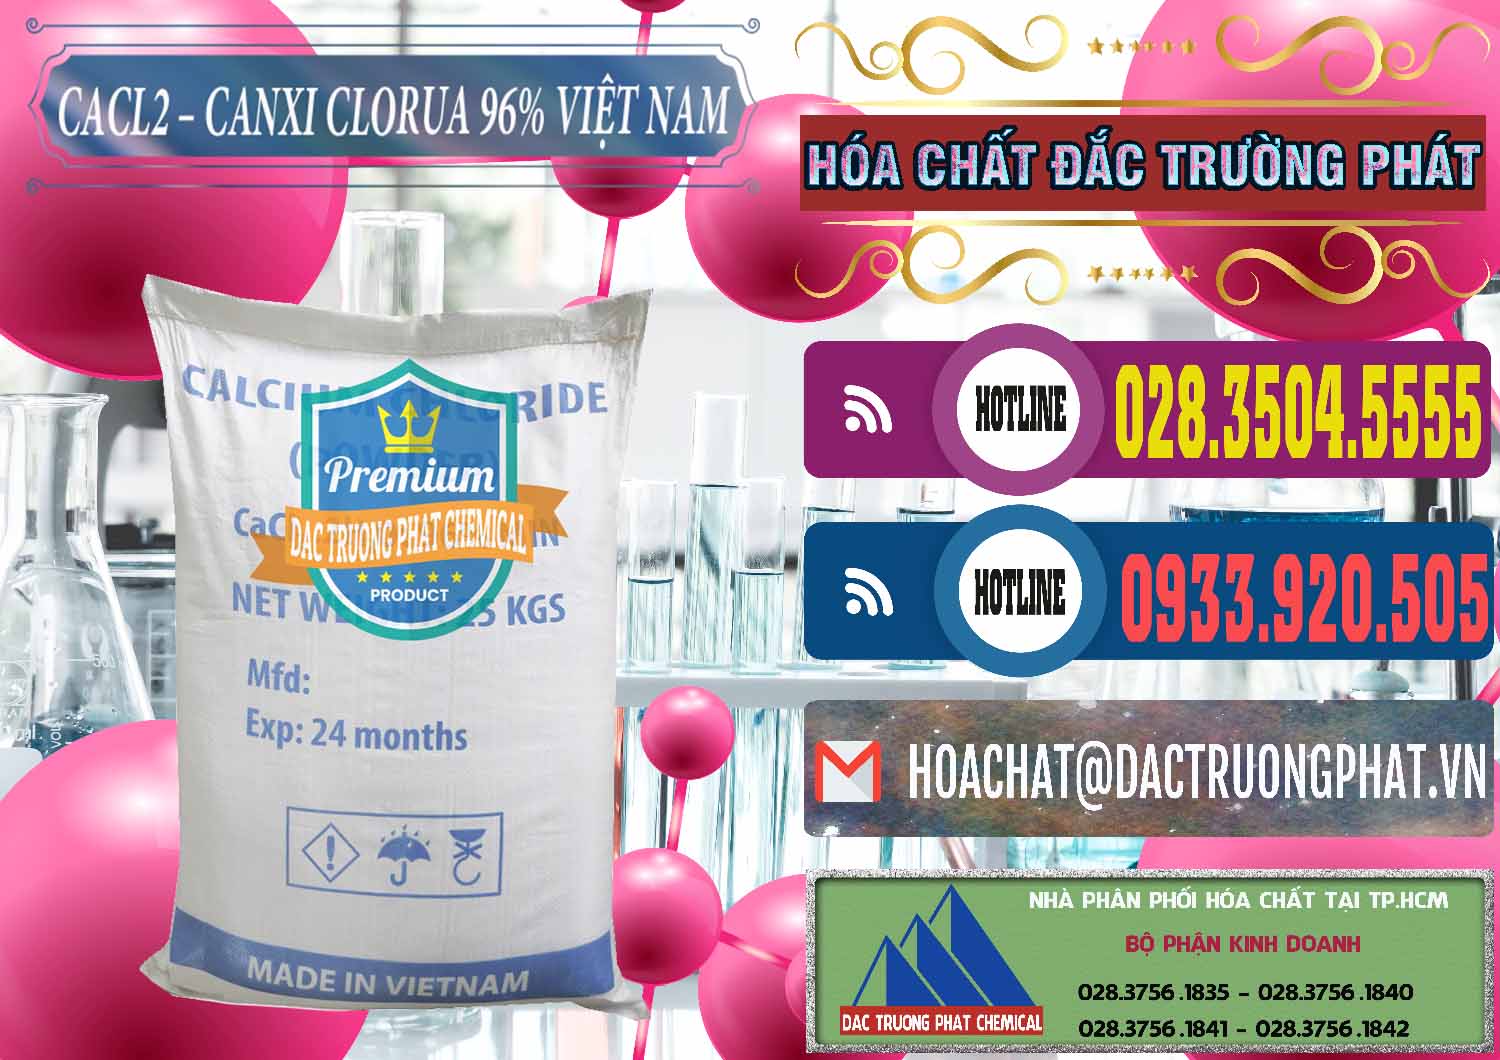 Chuyên cung cấp - phân phối CaCl2 – Canxi Clorua 96% Việt Nam - 0236 - Nơi cung cấp ( bán ) hóa chất tại TP.HCM - muabanhoachat.com.vn